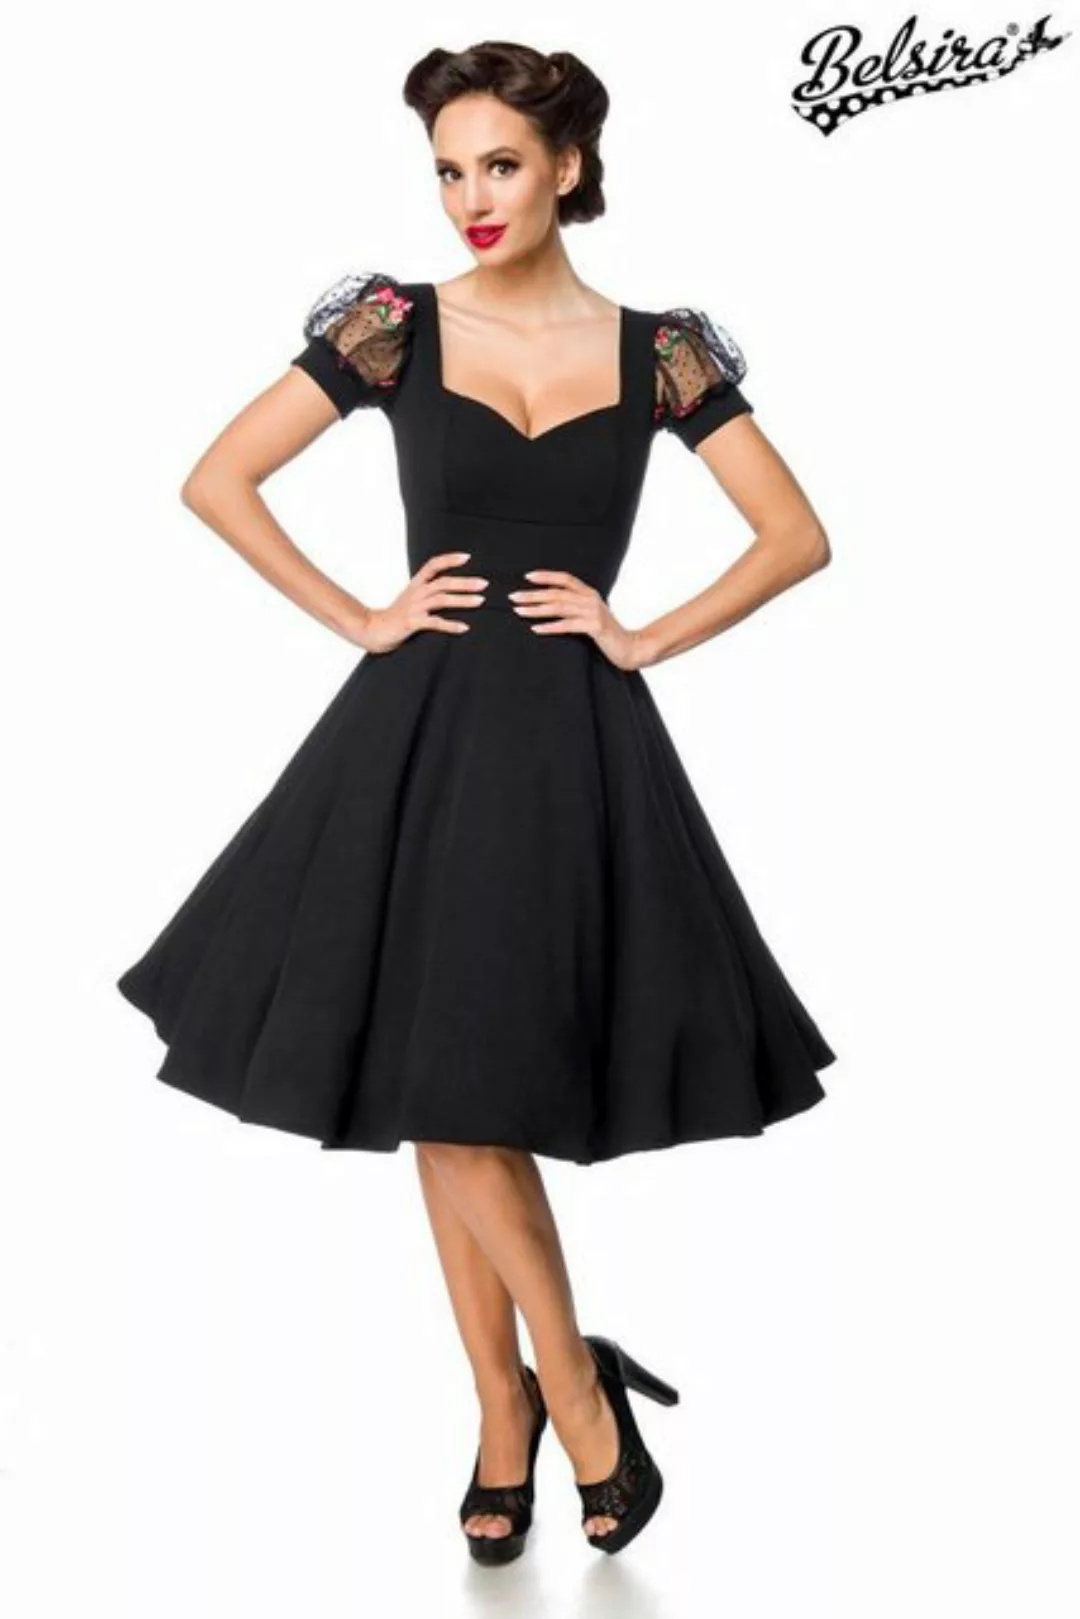 BELSIRA Trachtenkleid Belsira - Kleid mit Puffärmeln - (2XL,3XL,4XL,L,M,S) günstig online kaufen